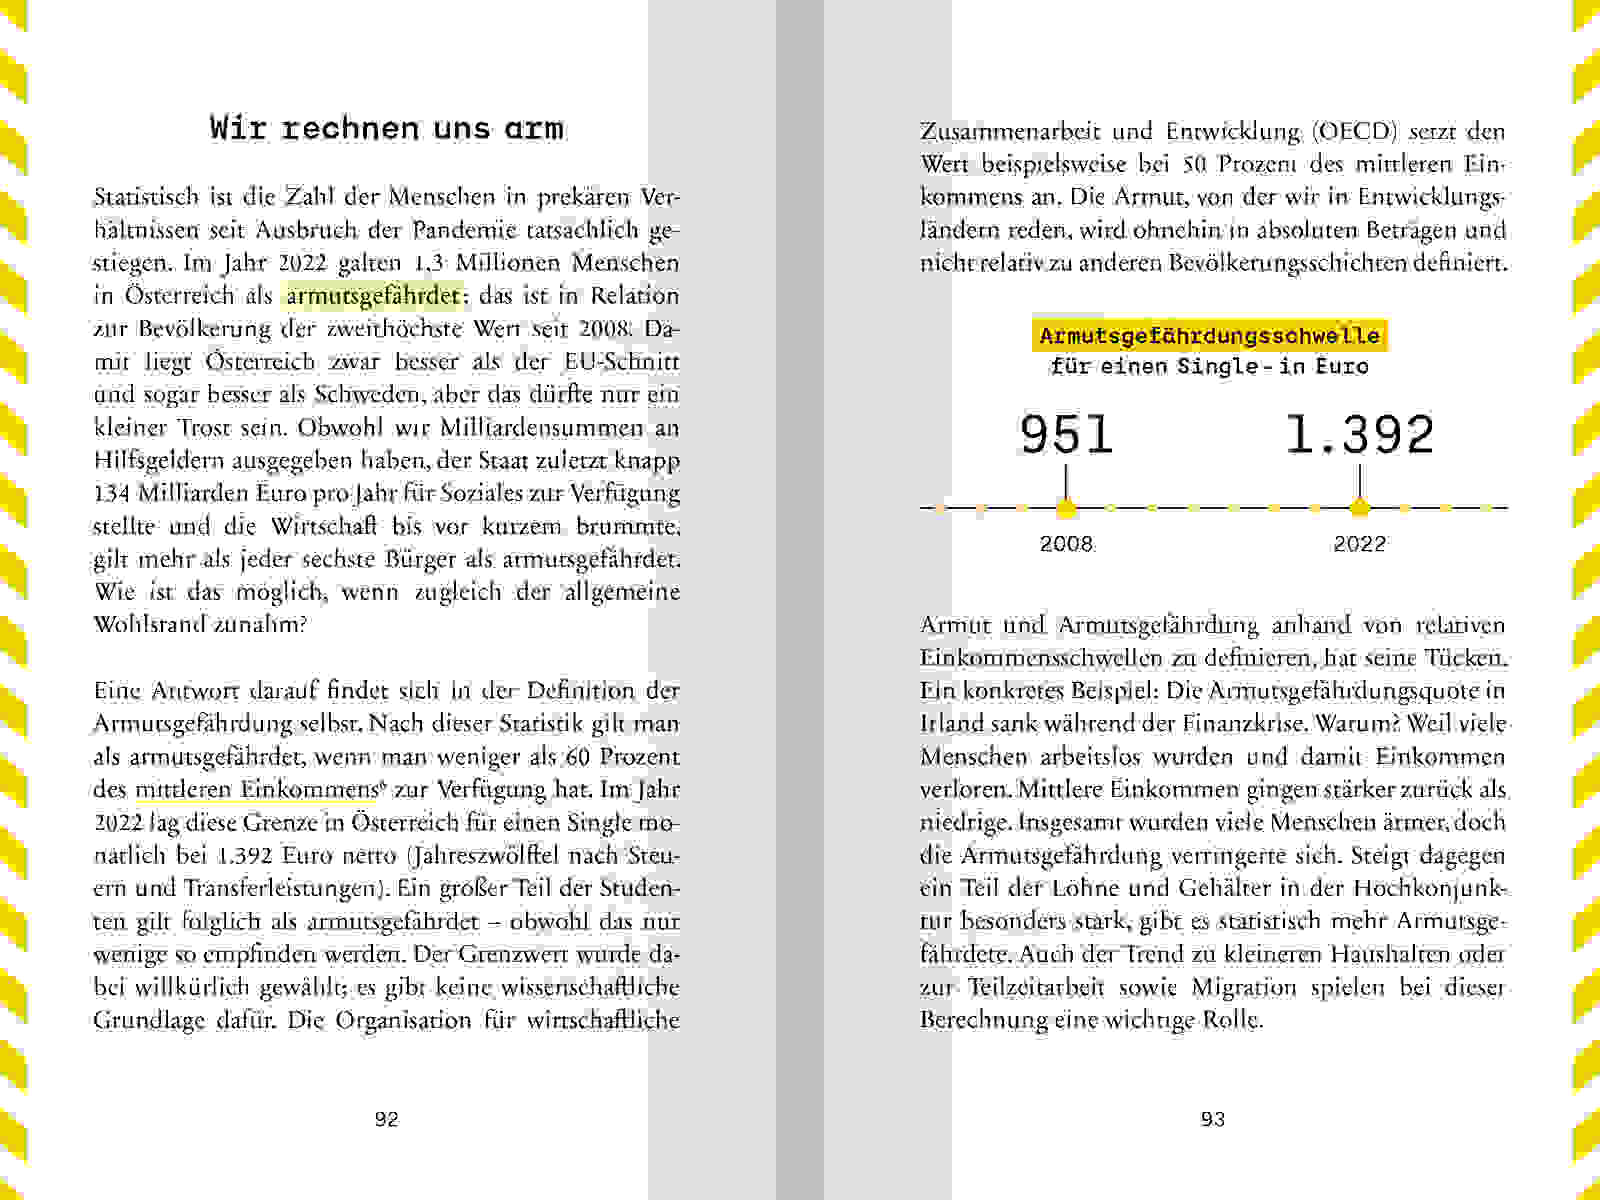 WEB AA Handbuch Wirtschaftsmythen 120x180mm S92 93